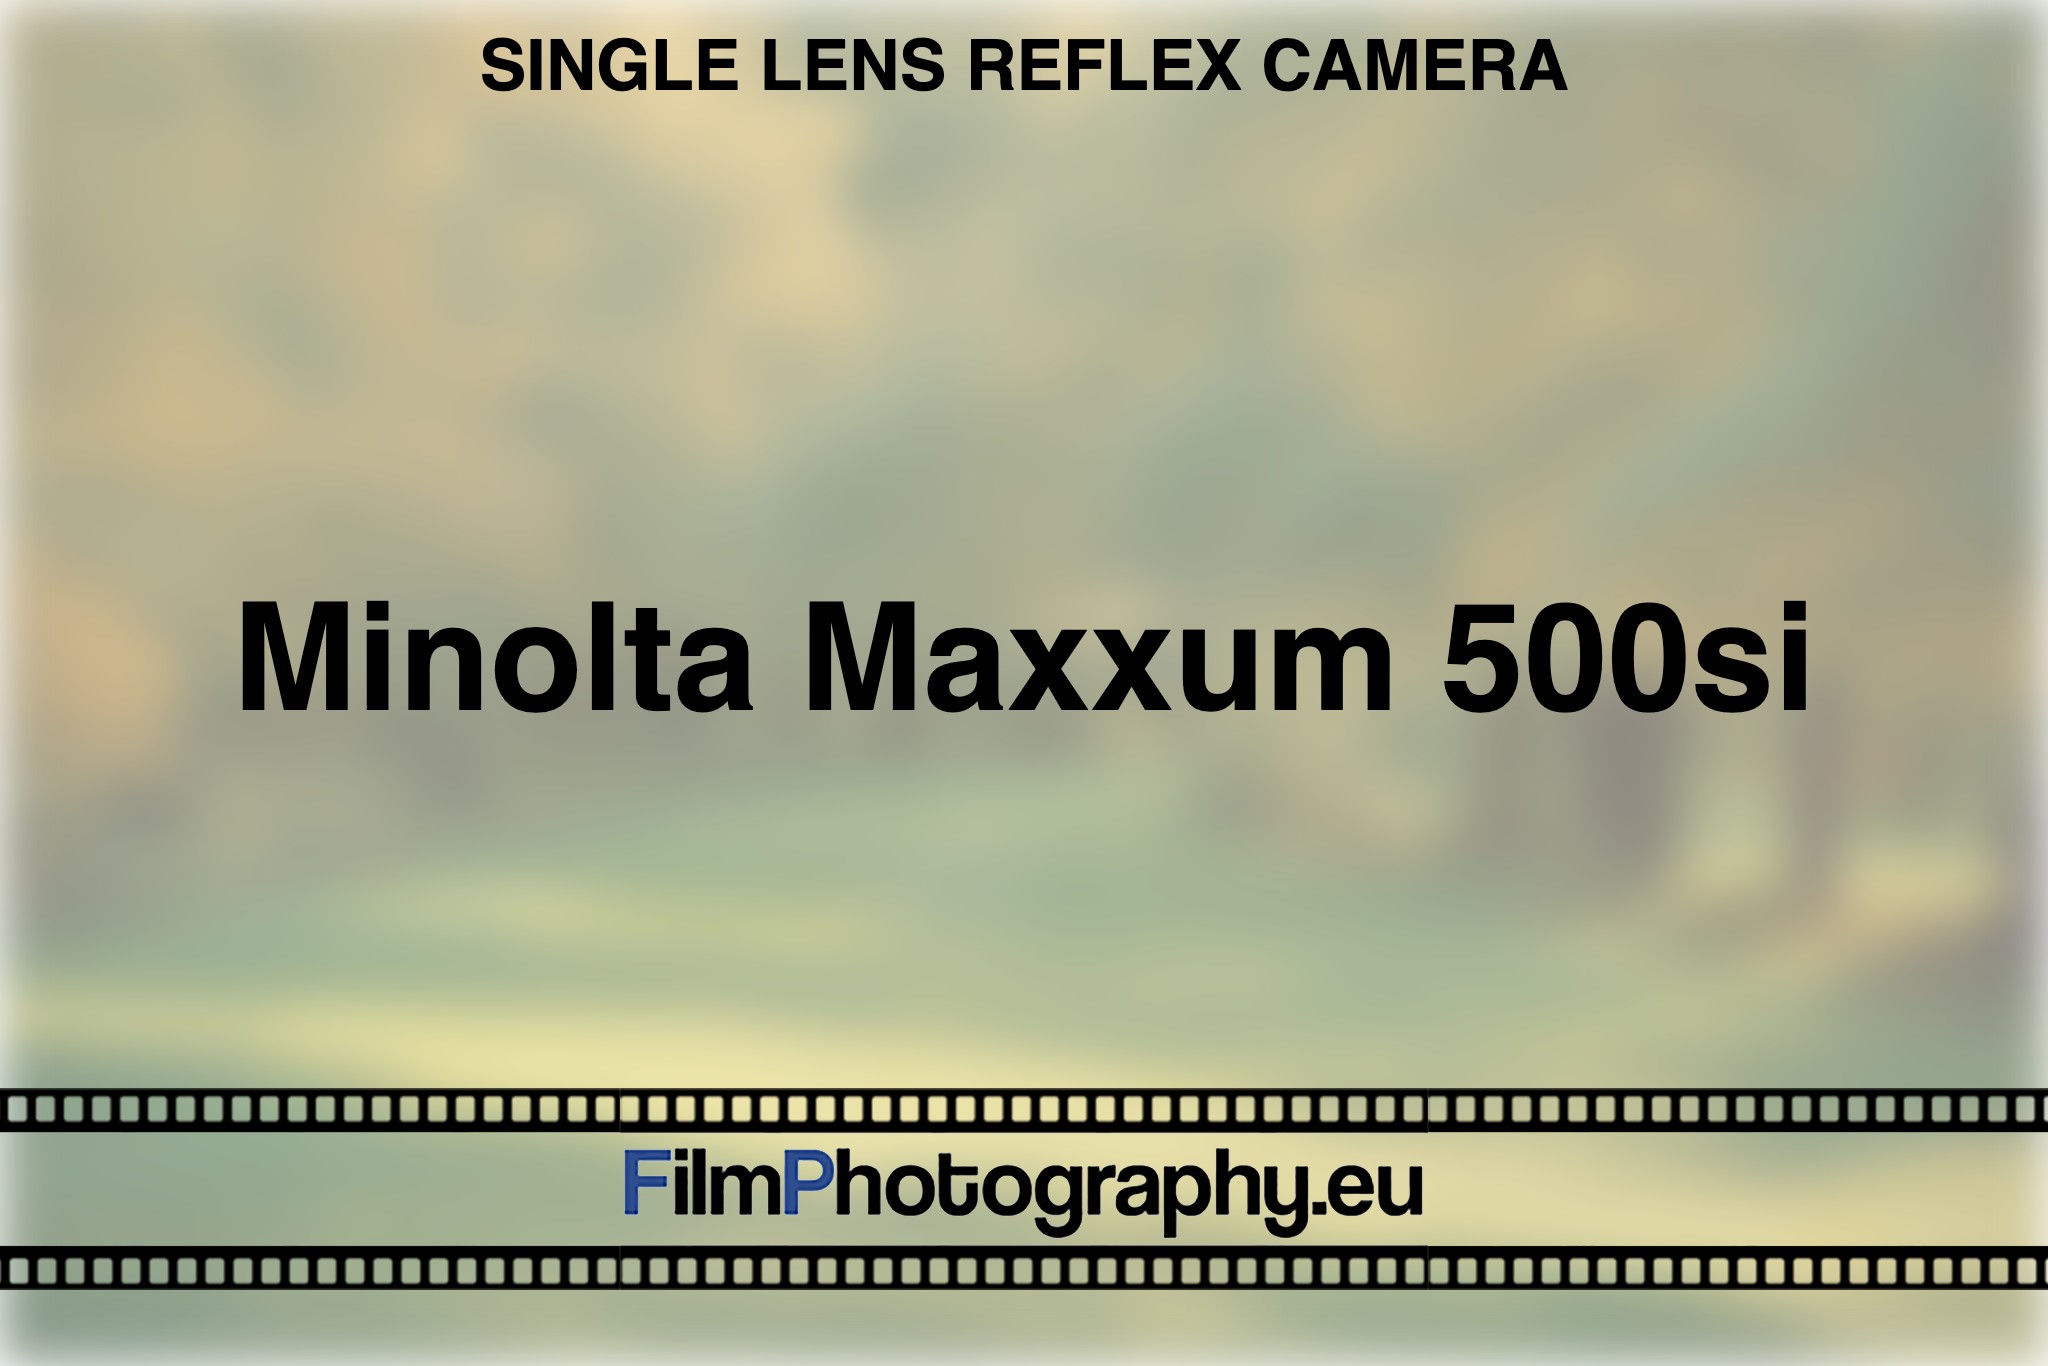 minolta-maxxum-500si-single-lens-reflex-camera-bnv